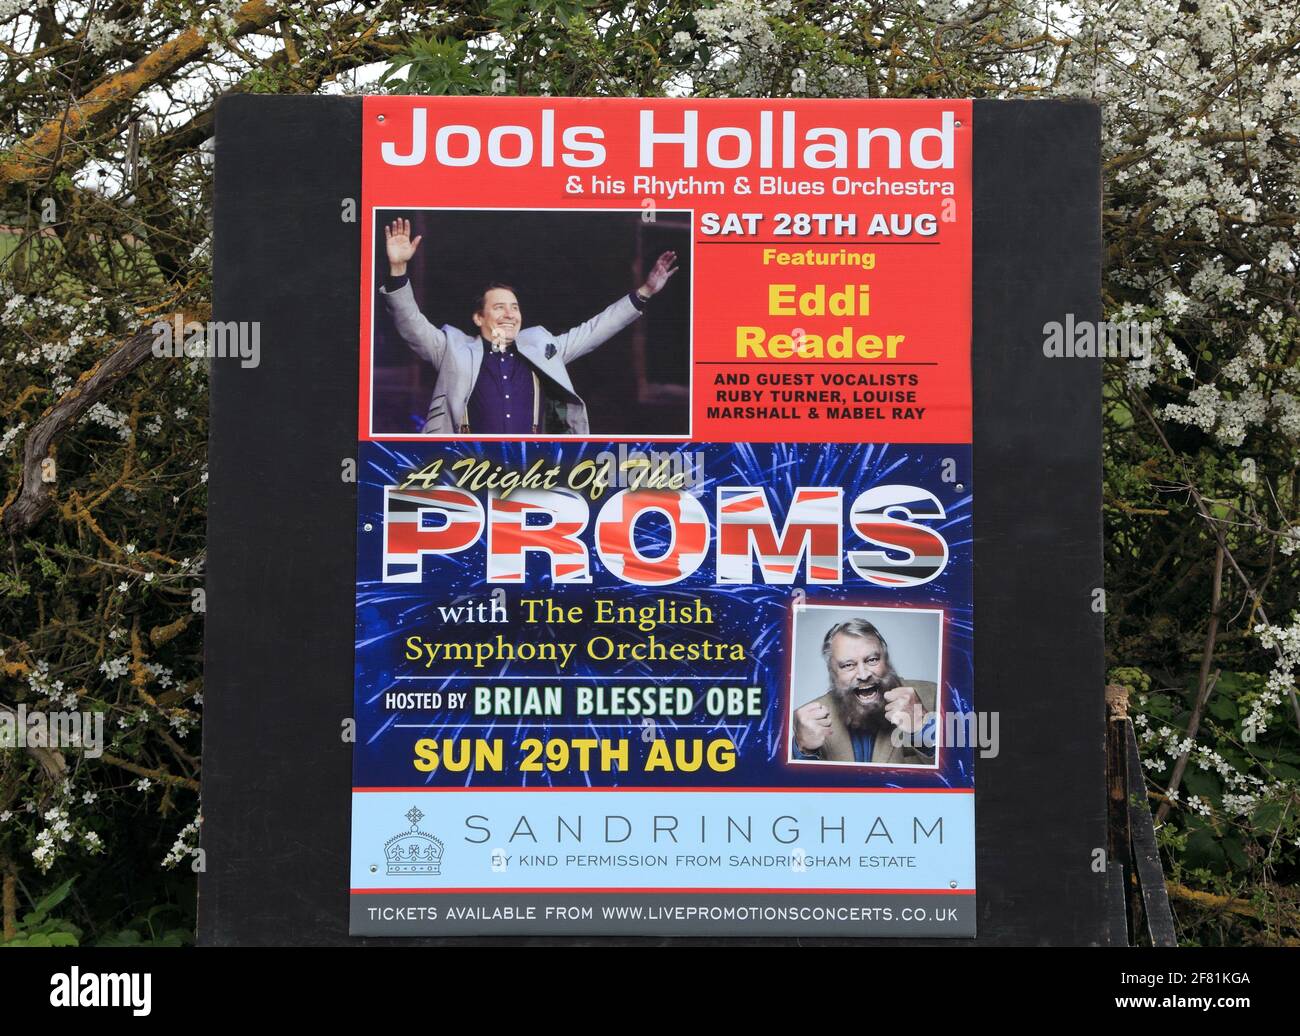 Jools Holland, Proms, bord de route, affiche publicitaire, concert, 28 août 2021, Sandringham, Norfolk, Angleterre Banque D'Images